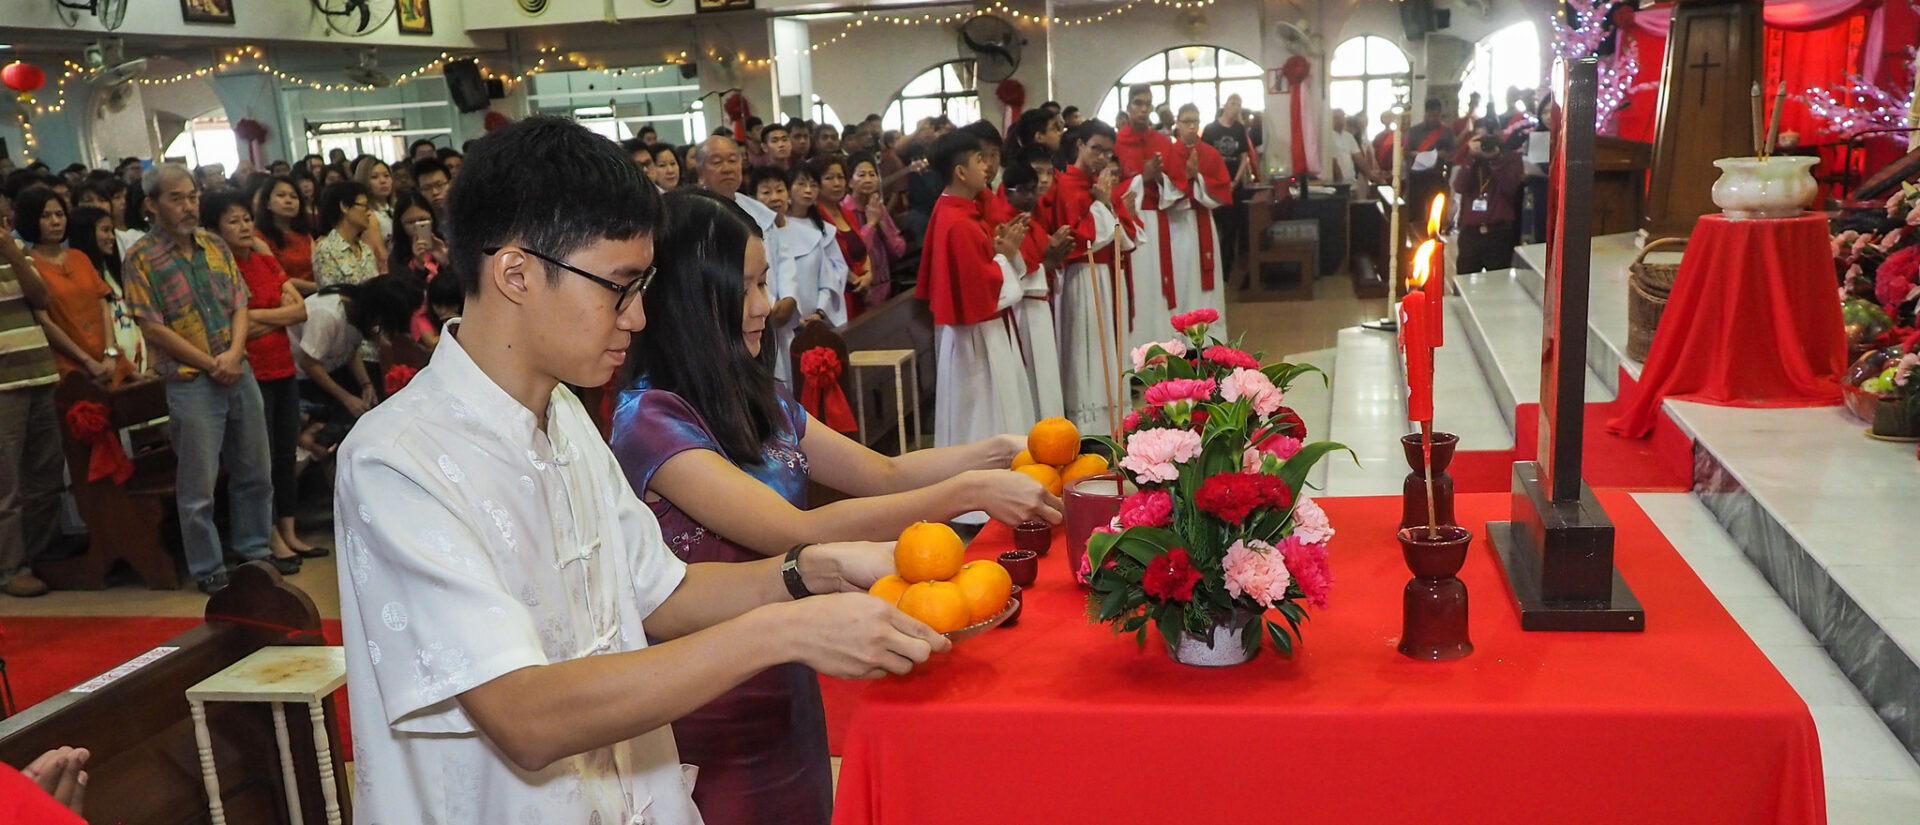 Les chrétiens de Chine sont appelés à "se faire discrets" pendant les Jeux olympiques  | © John Ragai/Flickr/CC BY 2.0